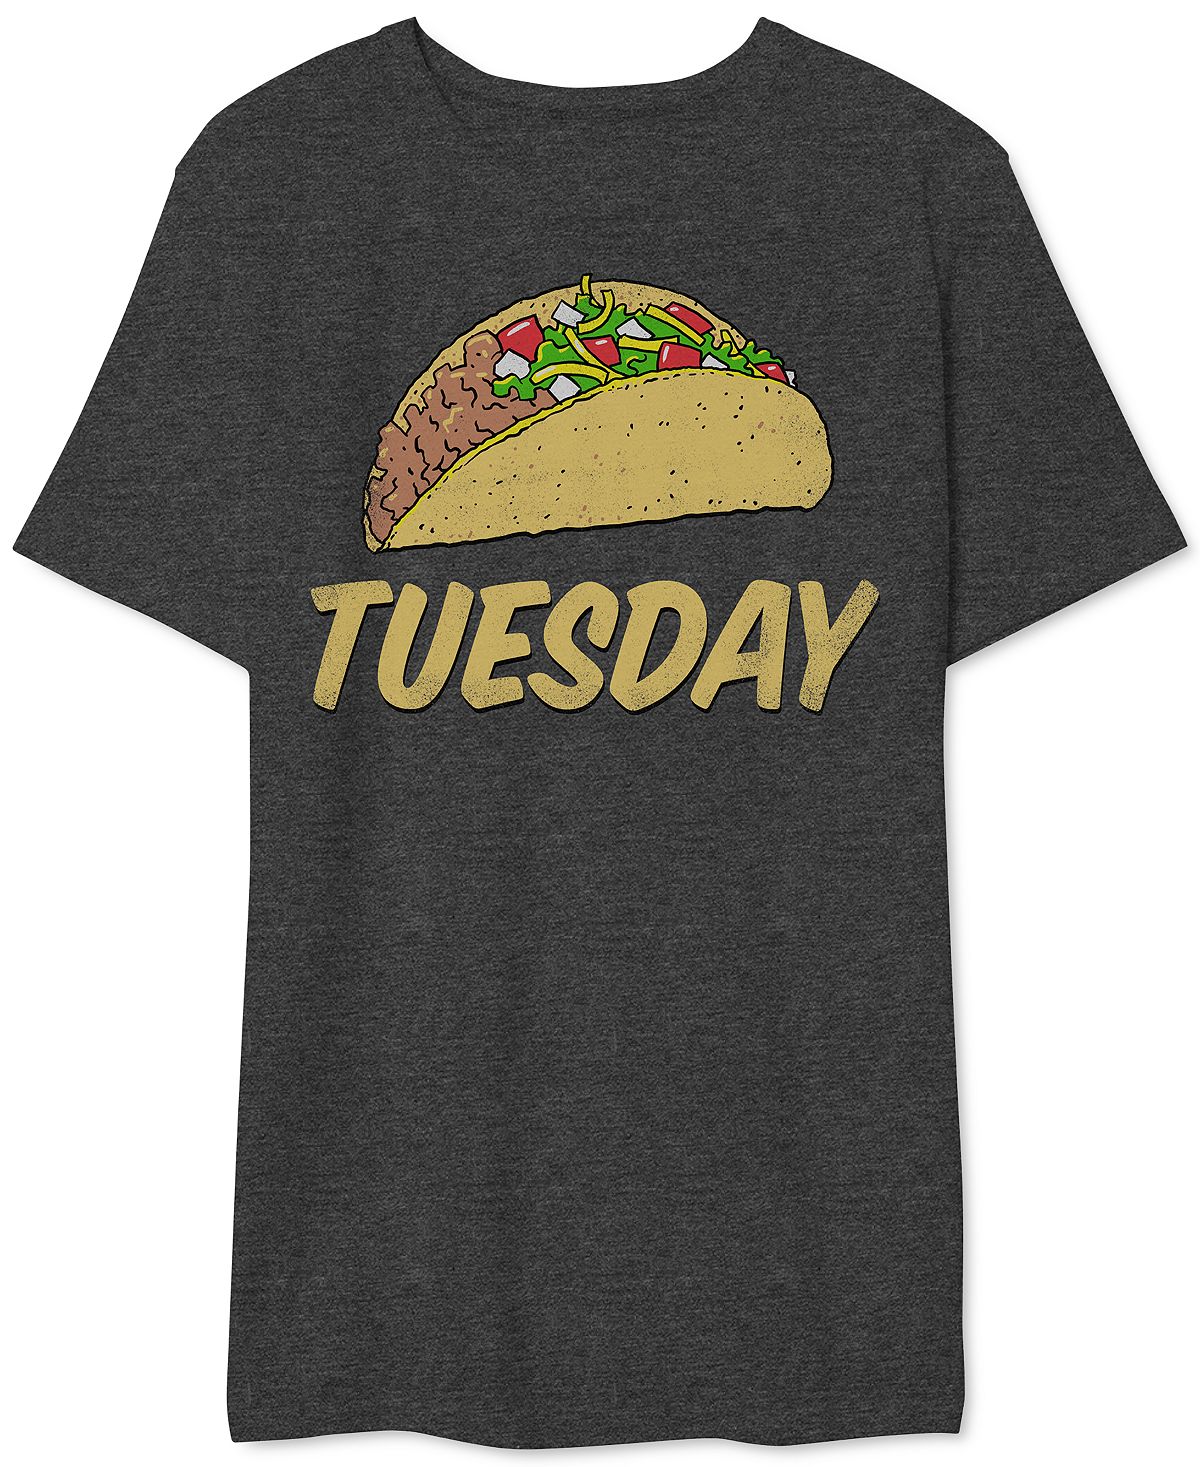 Мужская футболка с рисунком taco вторник AIRWAVES, мульти